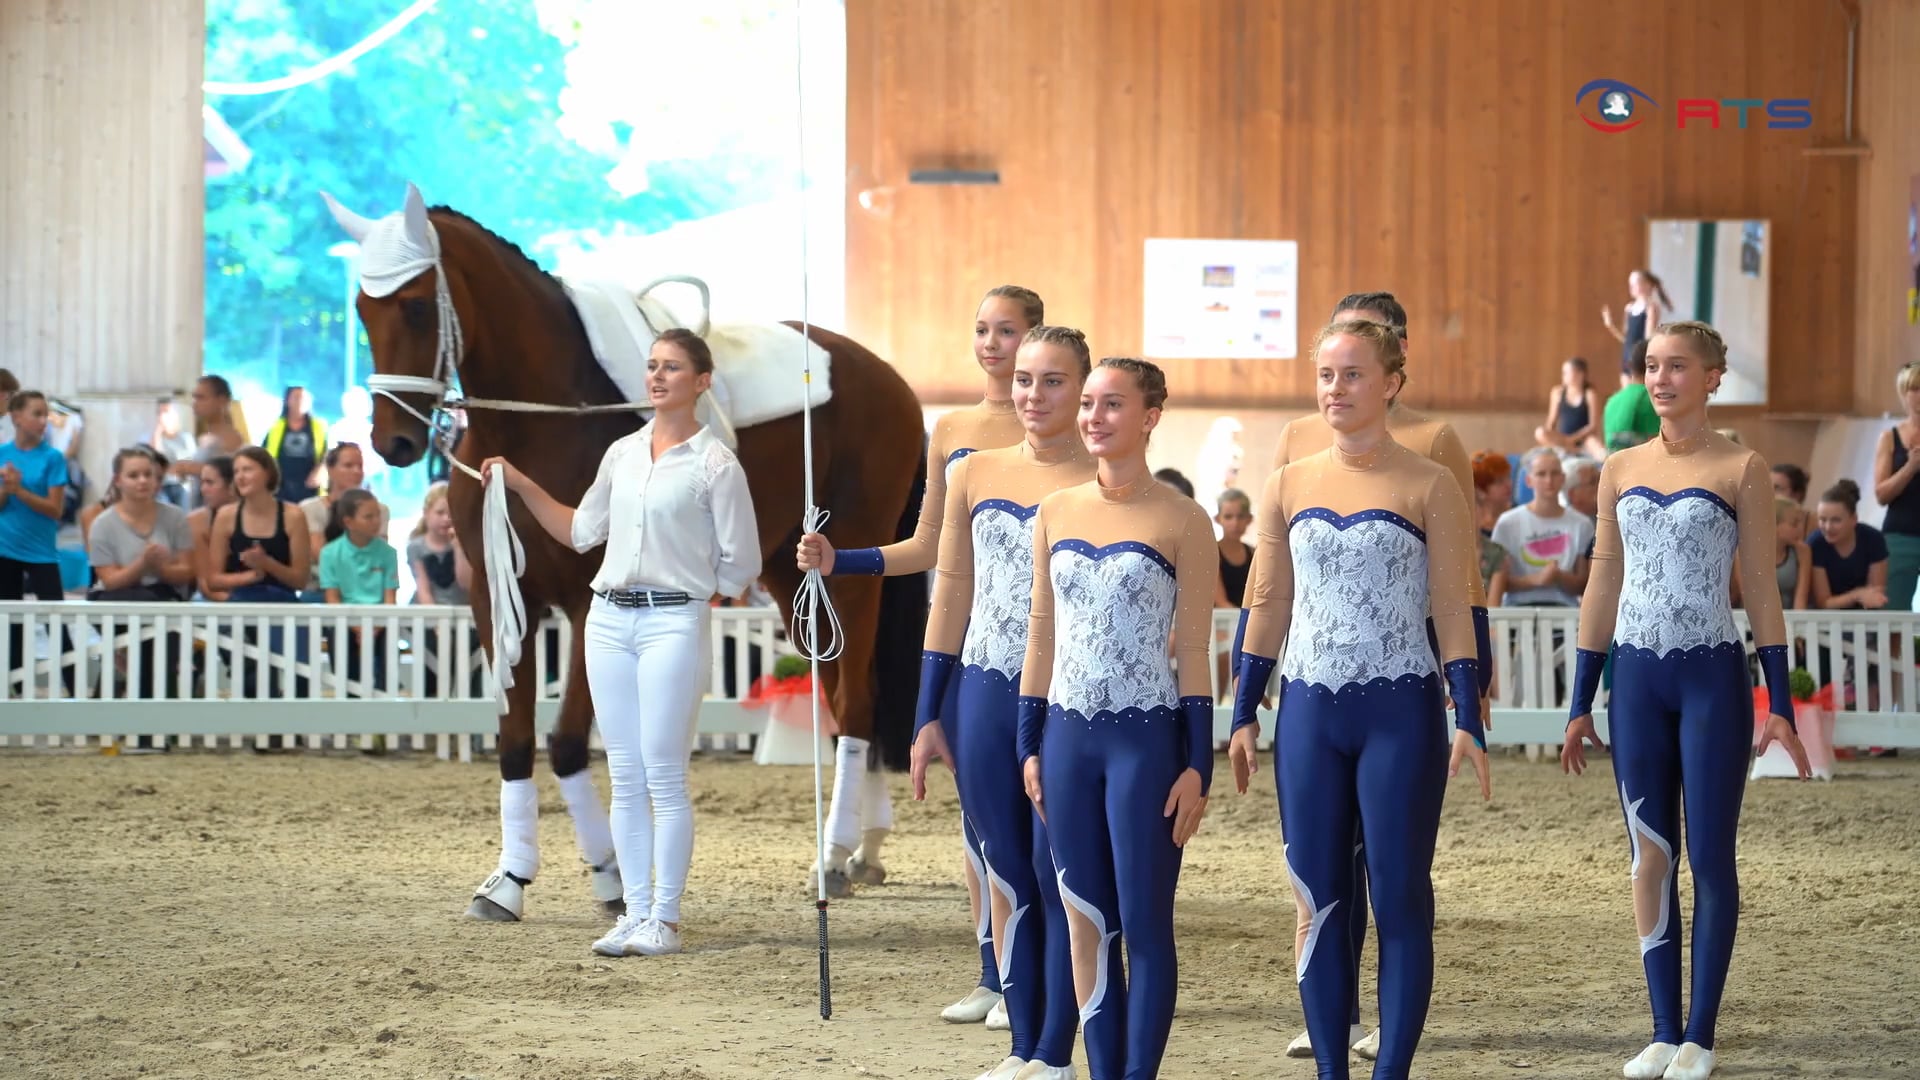 Pferdesport Salzburger Landesmeisterschaften im Voltigieren 2019 on Vimeo